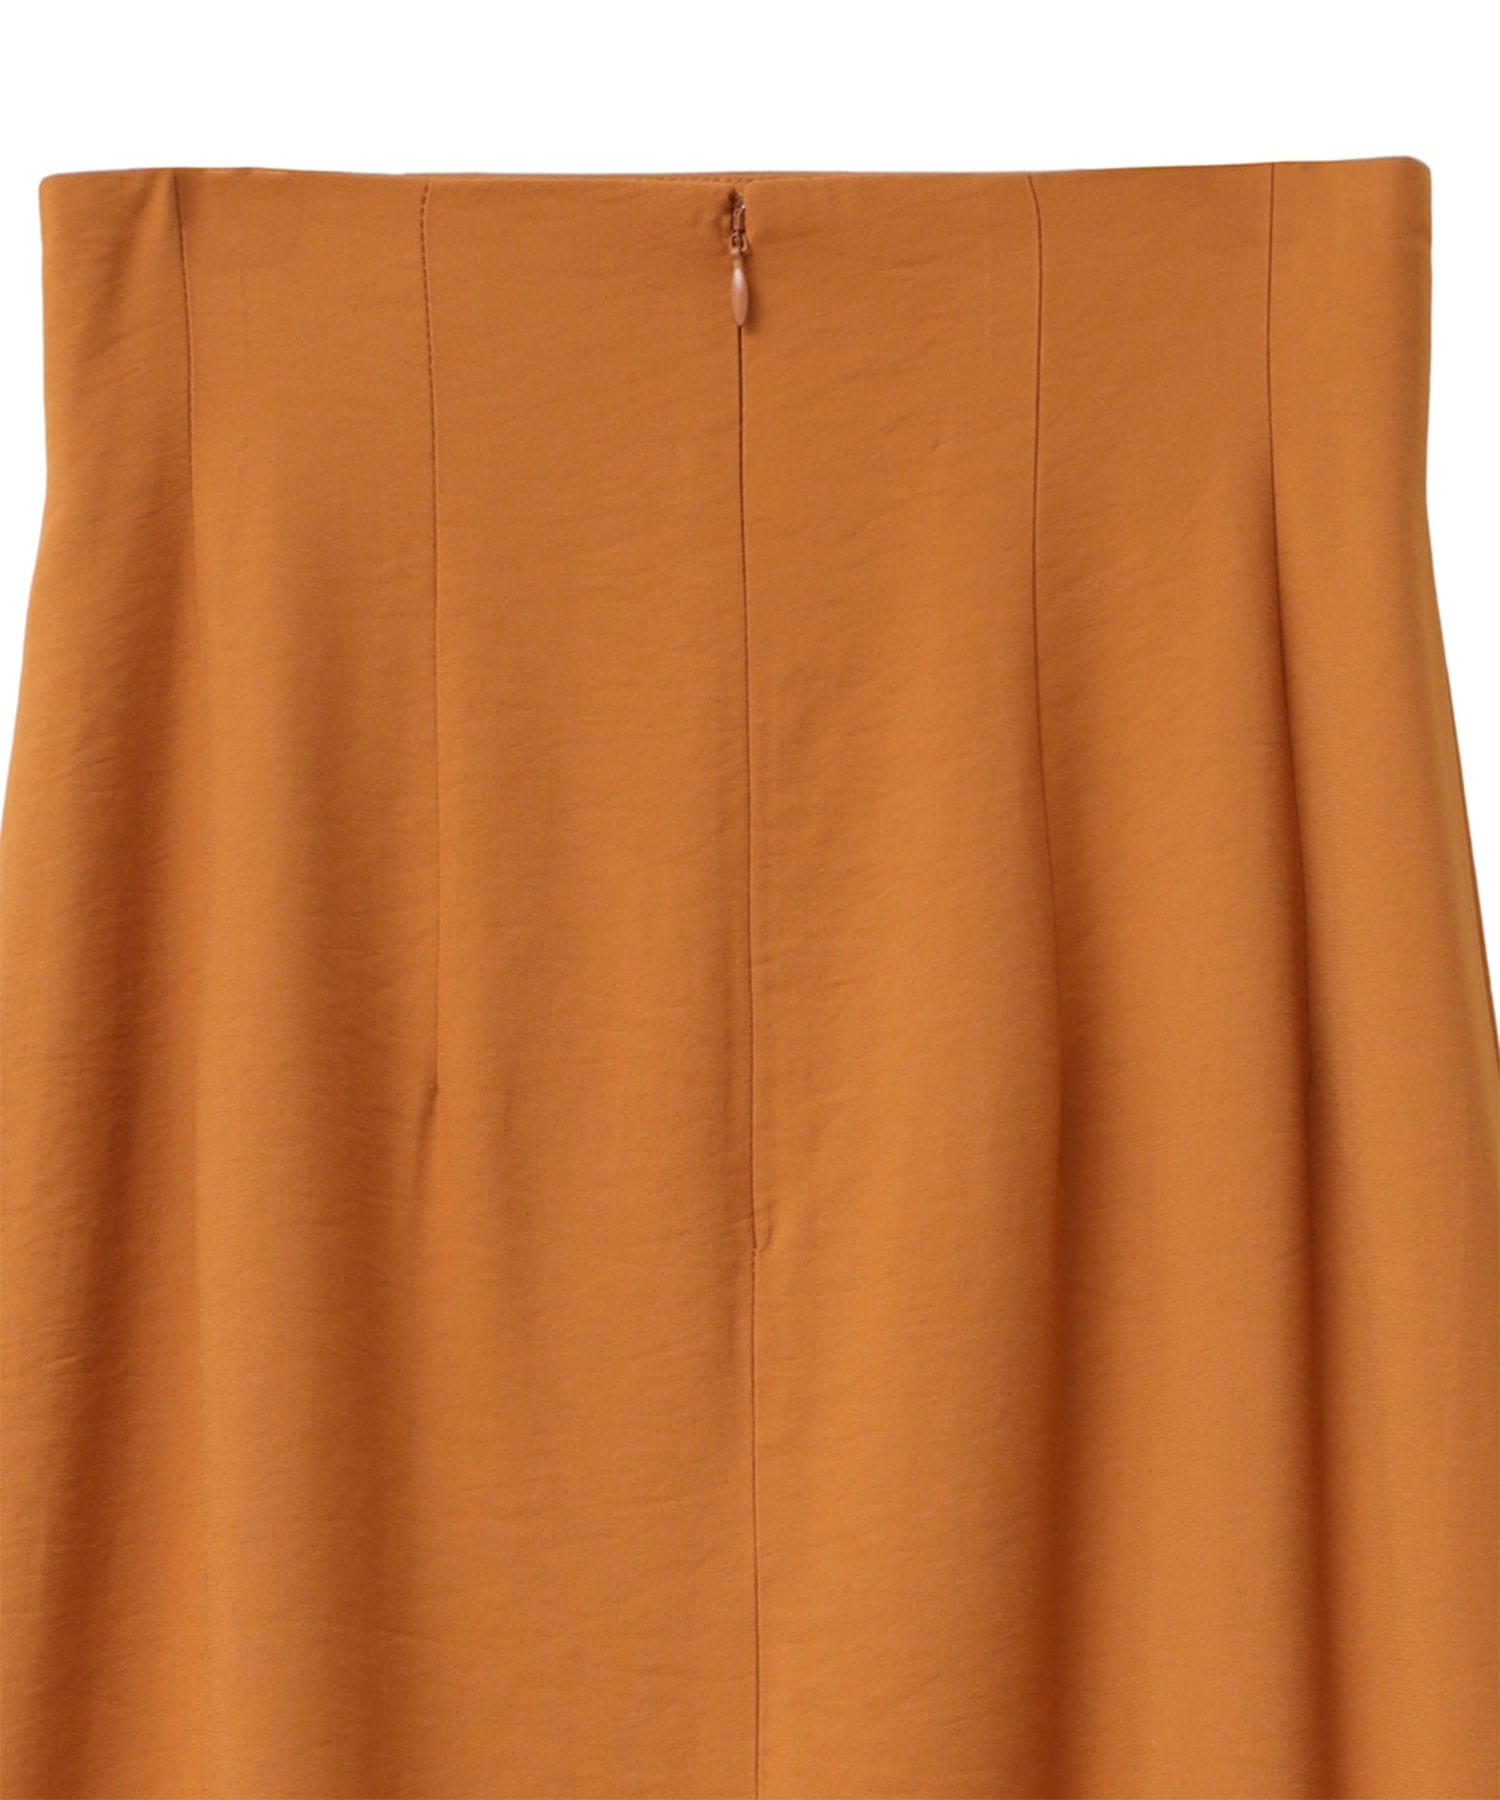 ロングマーメイドスカート 12109-6102(0 ORANGE): CLANE: WOMENS 